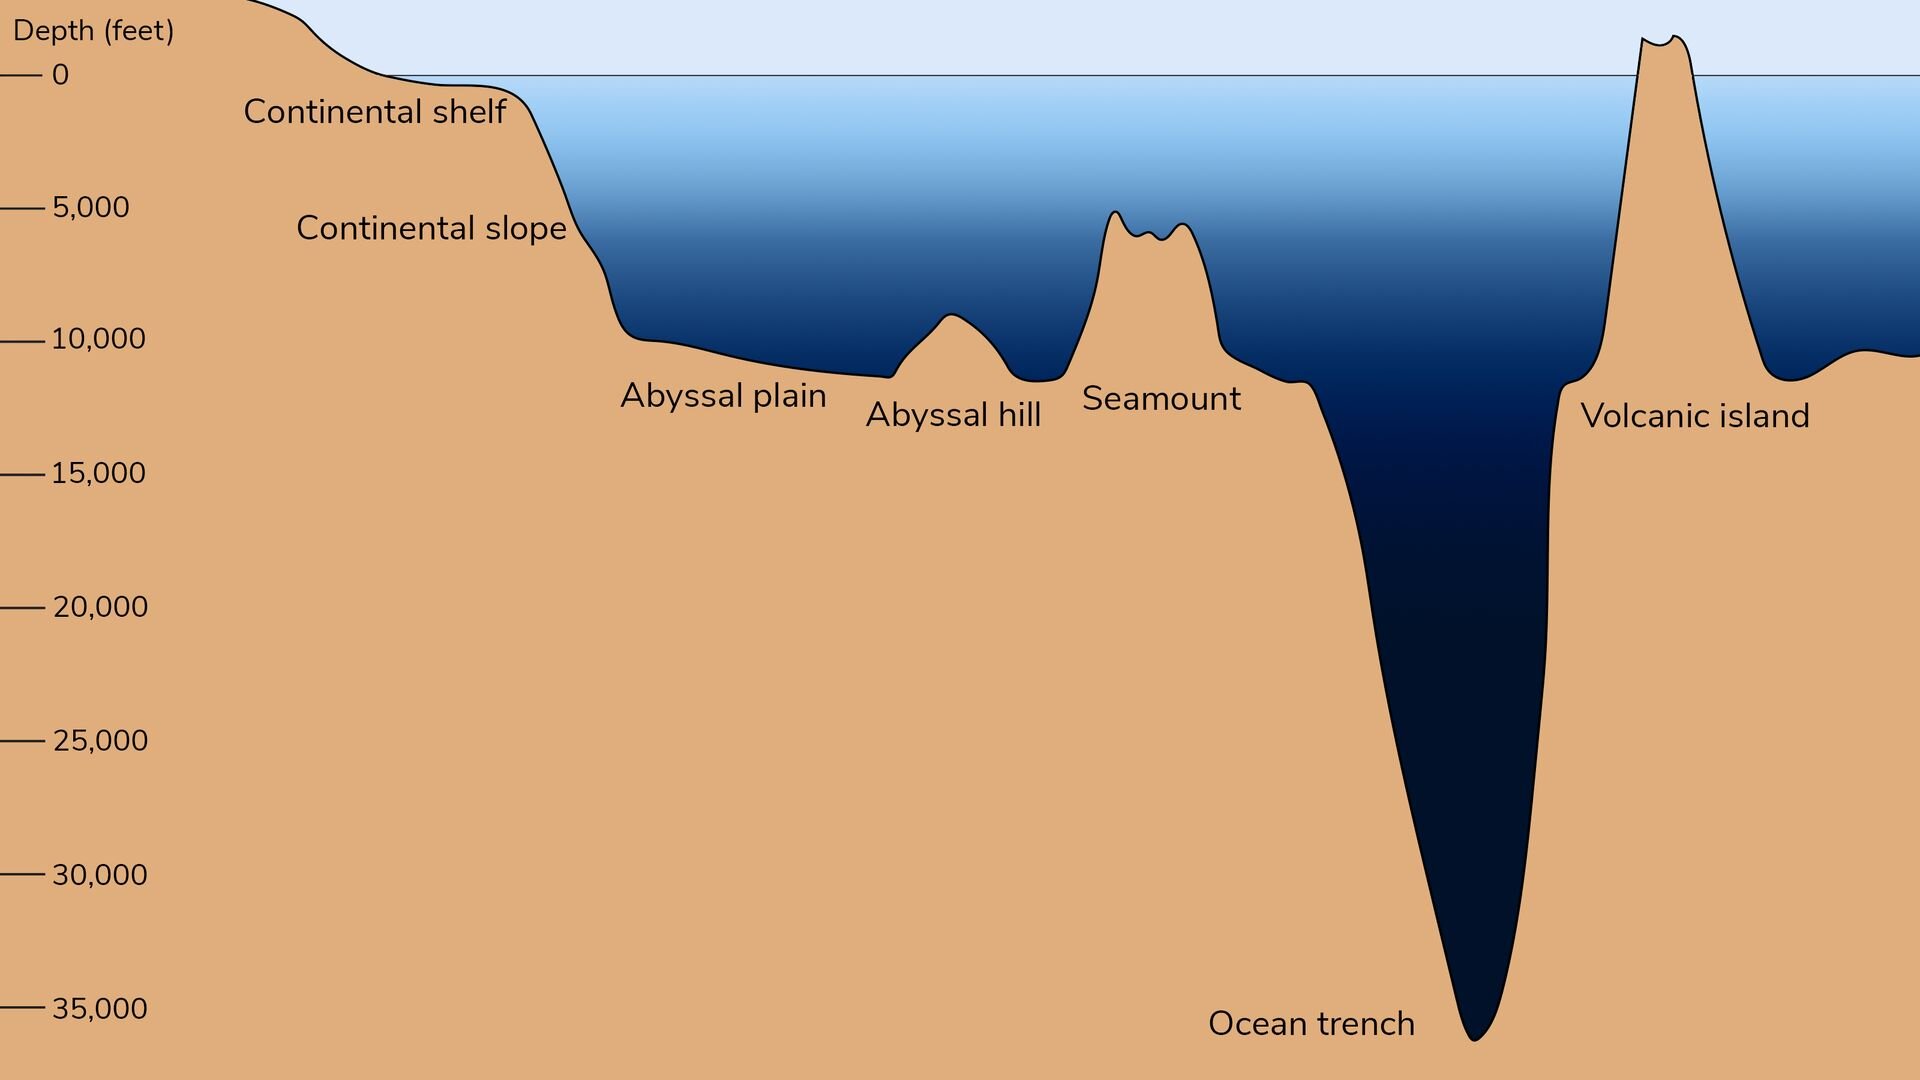 Hình dạng và độ sâu của đáy đại dương ảnh hưởng sâu sắc đến cách lưu trữ carbon ở đó